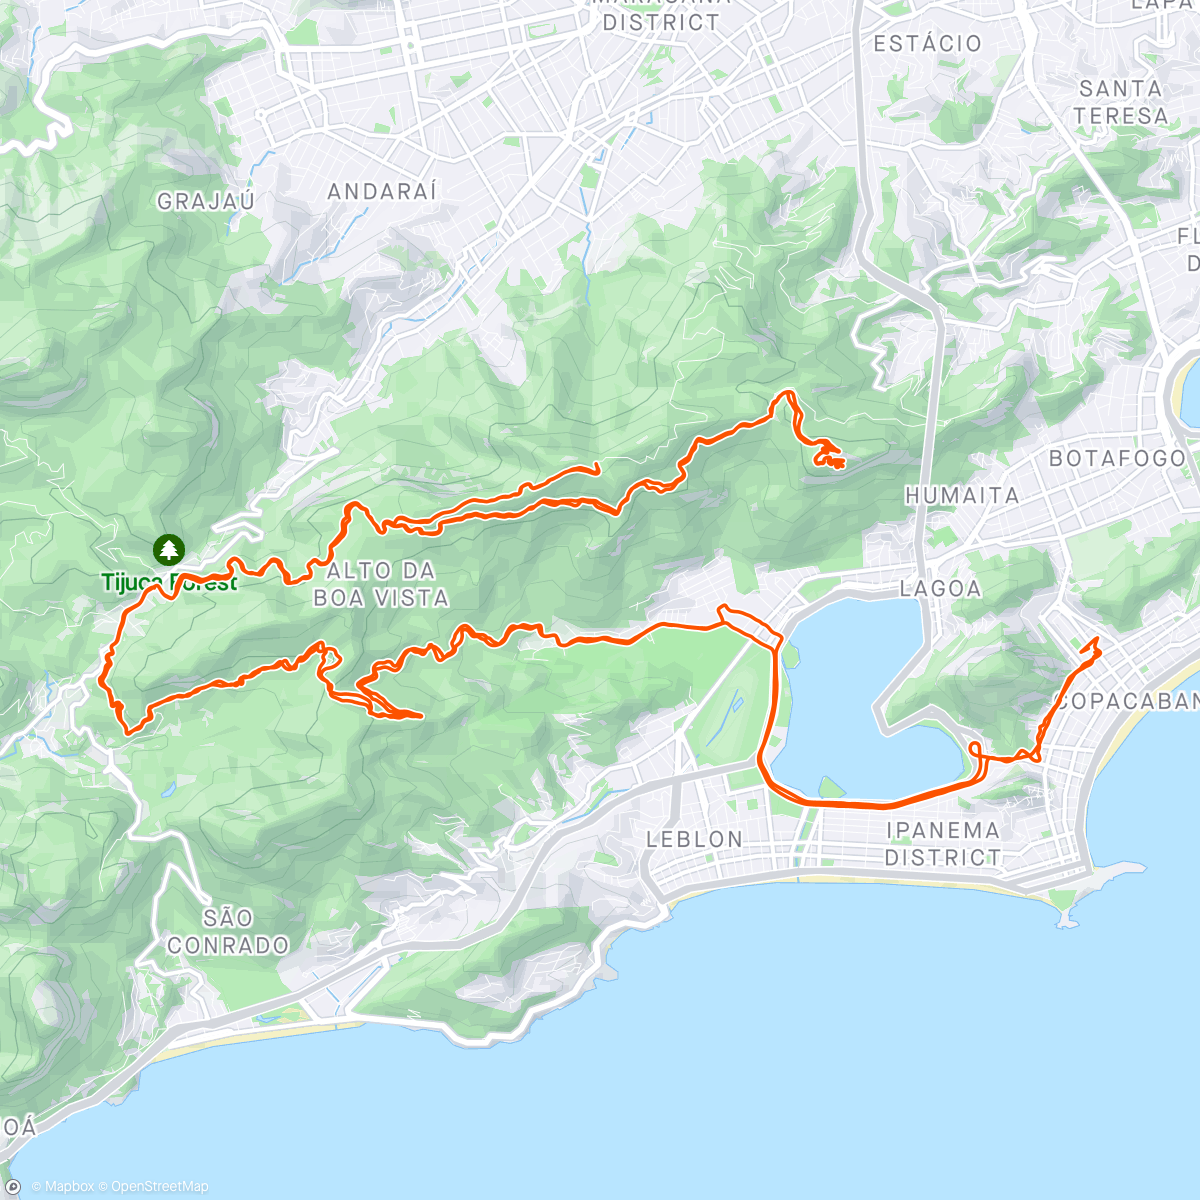 「Escalada Vista, Mesa, Bombeiros, Cristo e Sumaré」活動的地圖